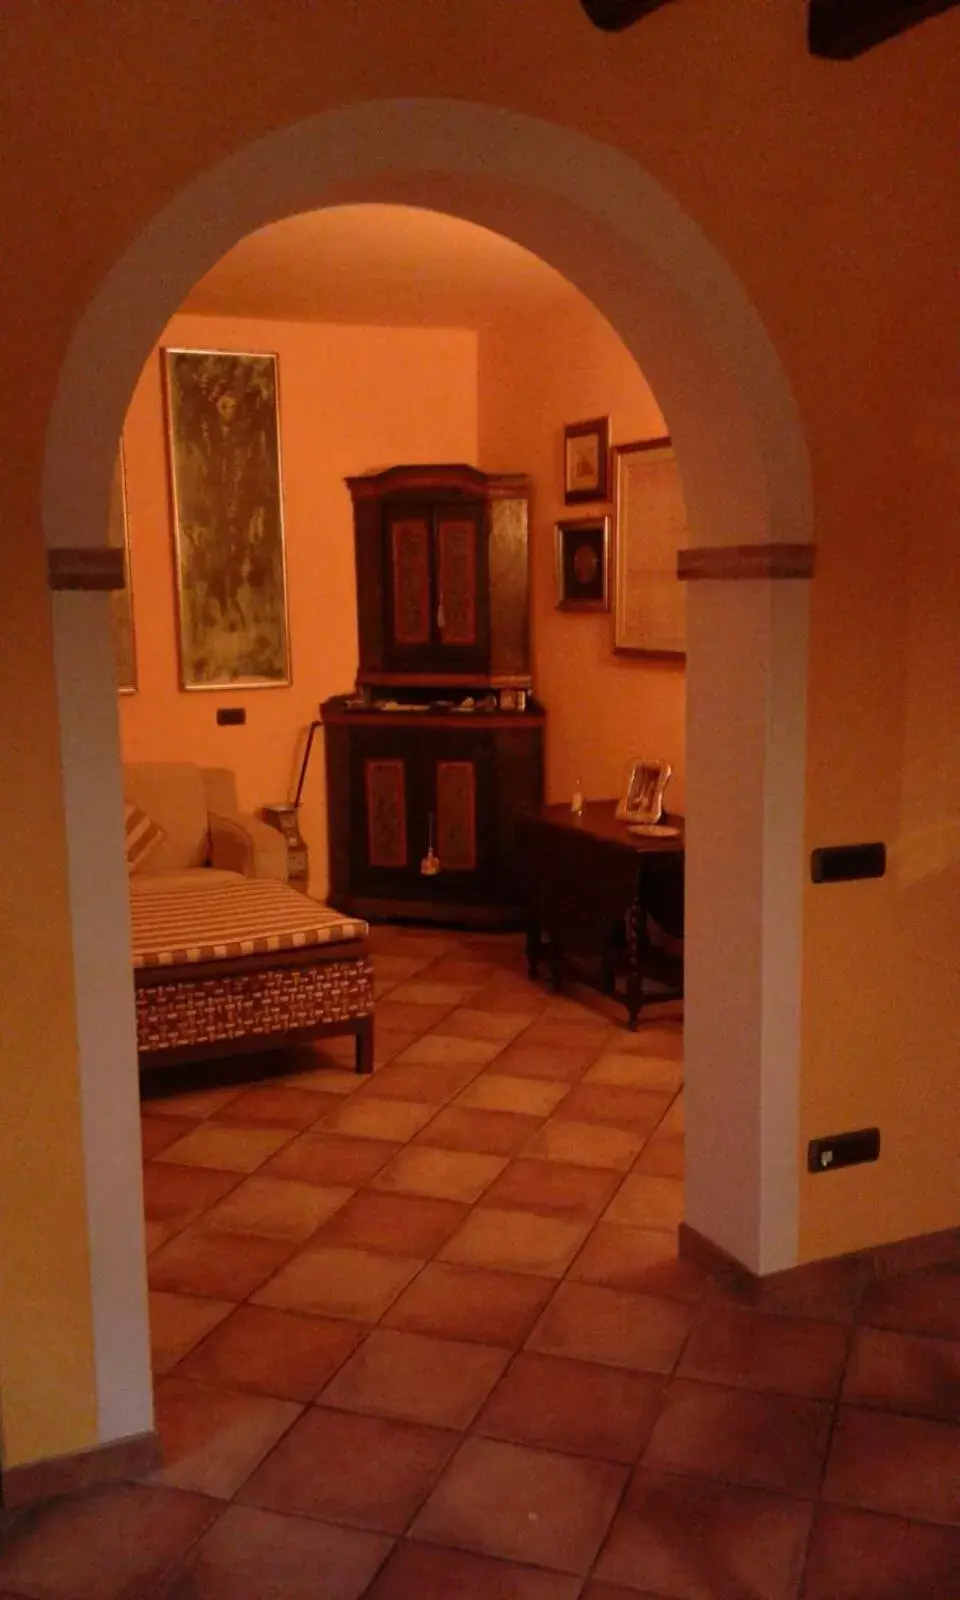 Decorative detail, Seating Area in Casa Degli Amici